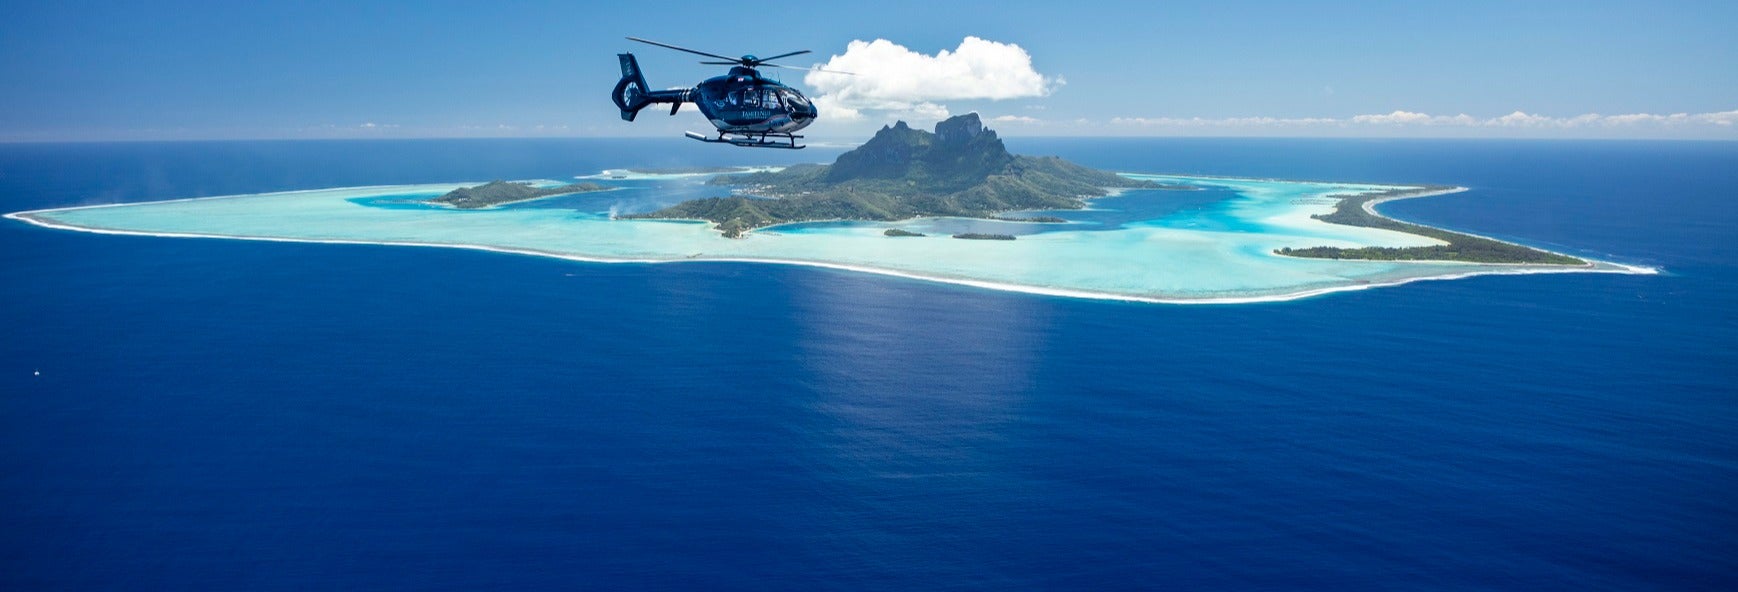 Passeio de helicóptero por Bora Bora